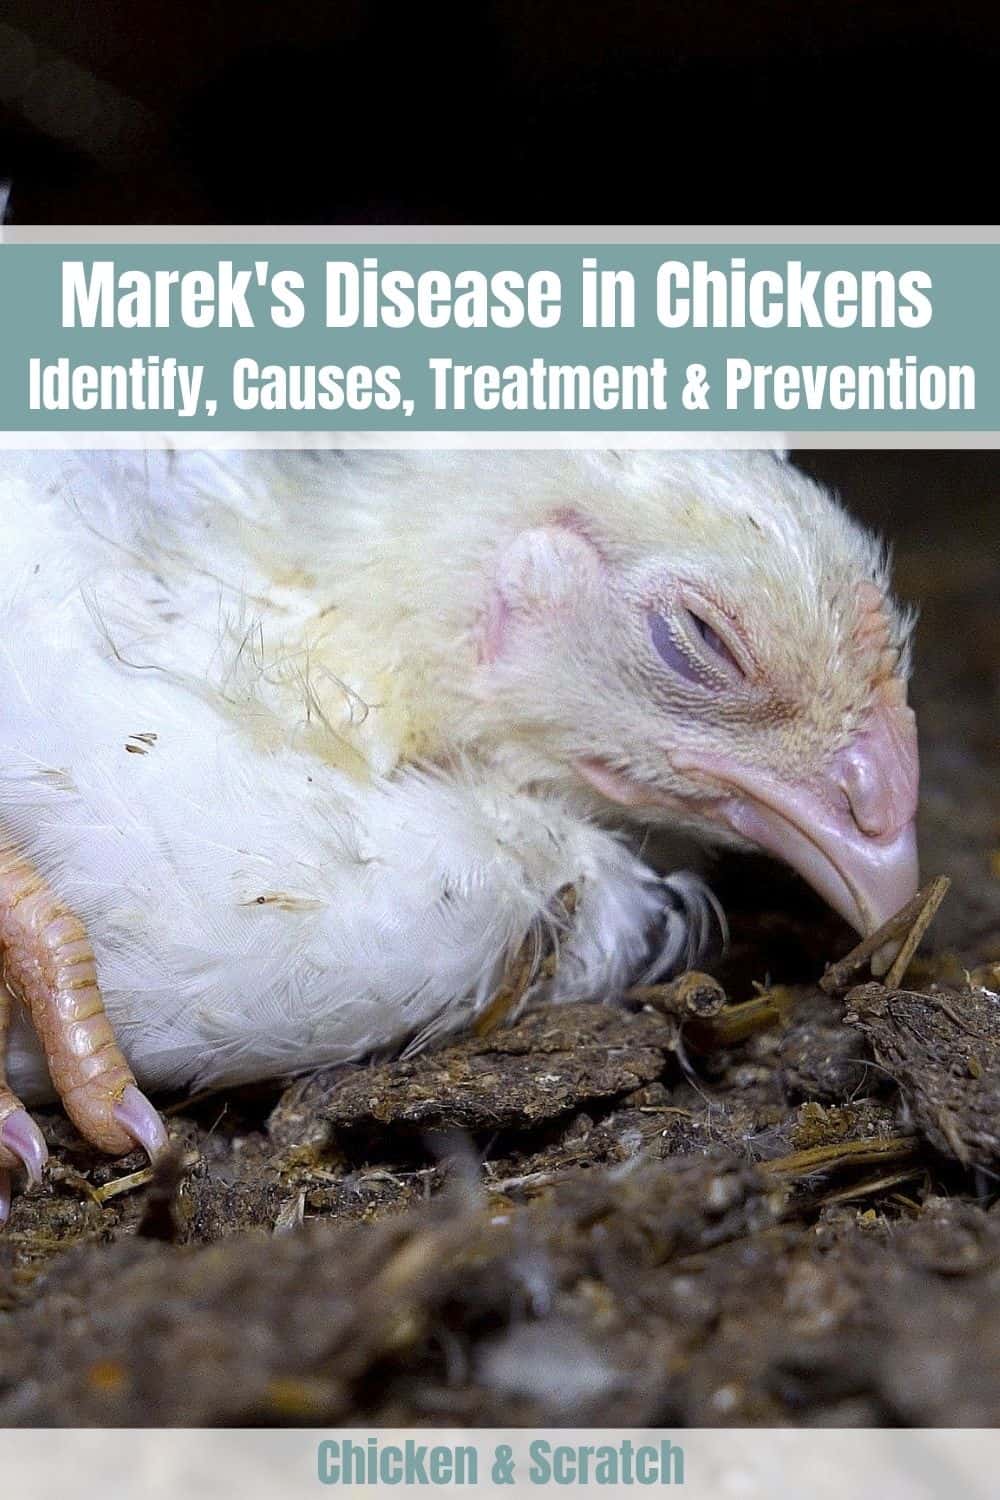 Mareks Disease